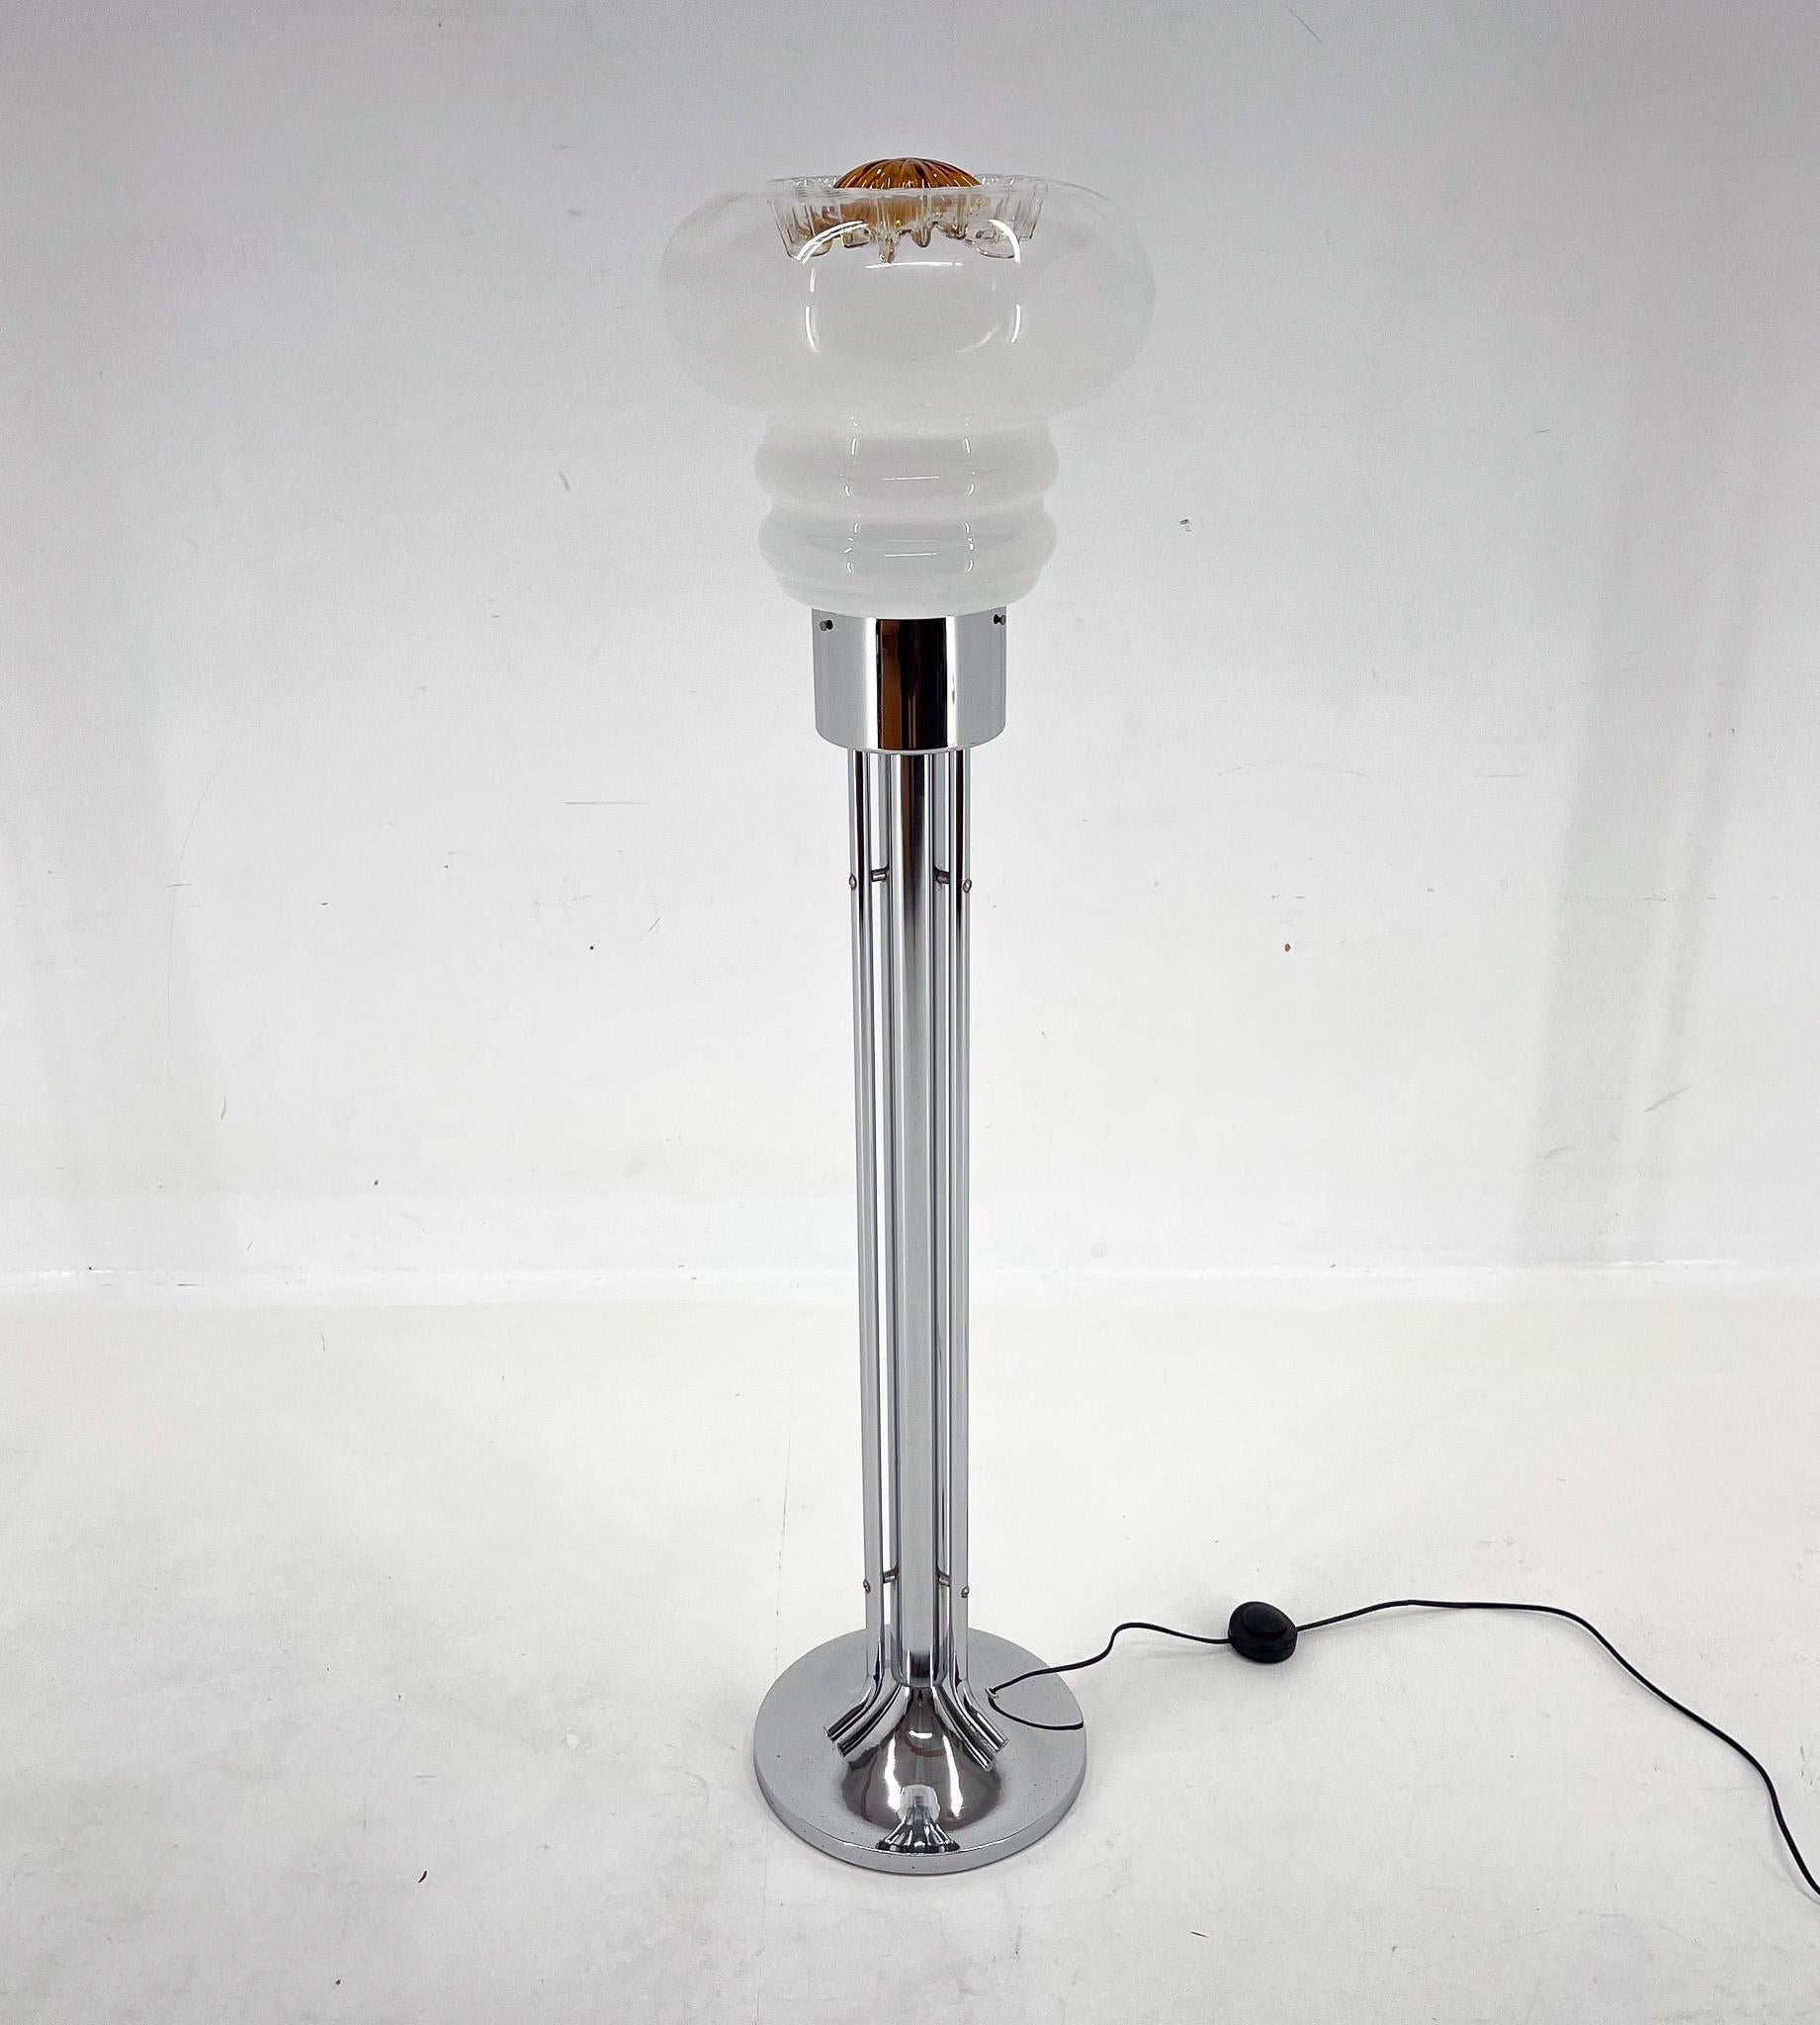 Lampadaire vintage en verre de Murano soufflé à la main, fabriqué en Italie dans les années 1970. La lampe a été restaurée et dispose d'un nouveau câblage avec interrupteur.